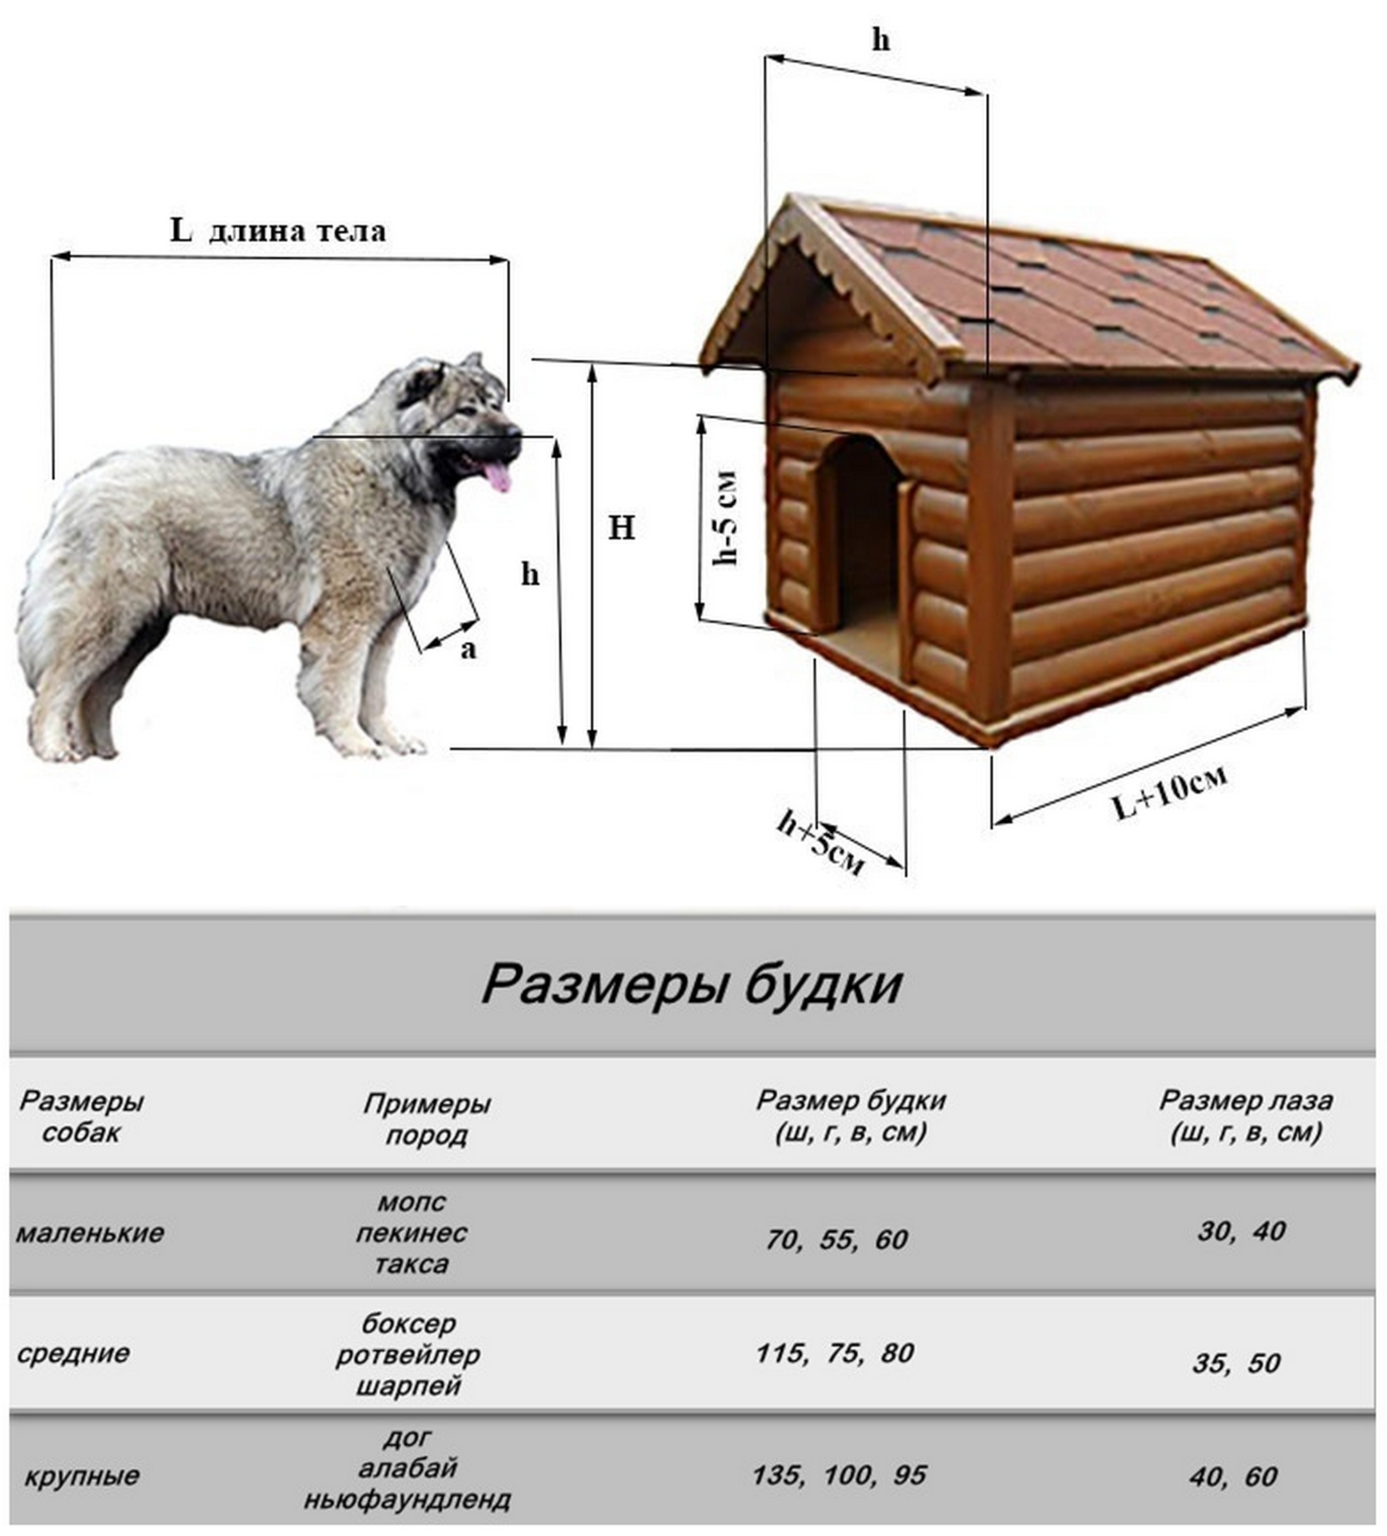 Размеры будки для овчарки, алабая и других собак